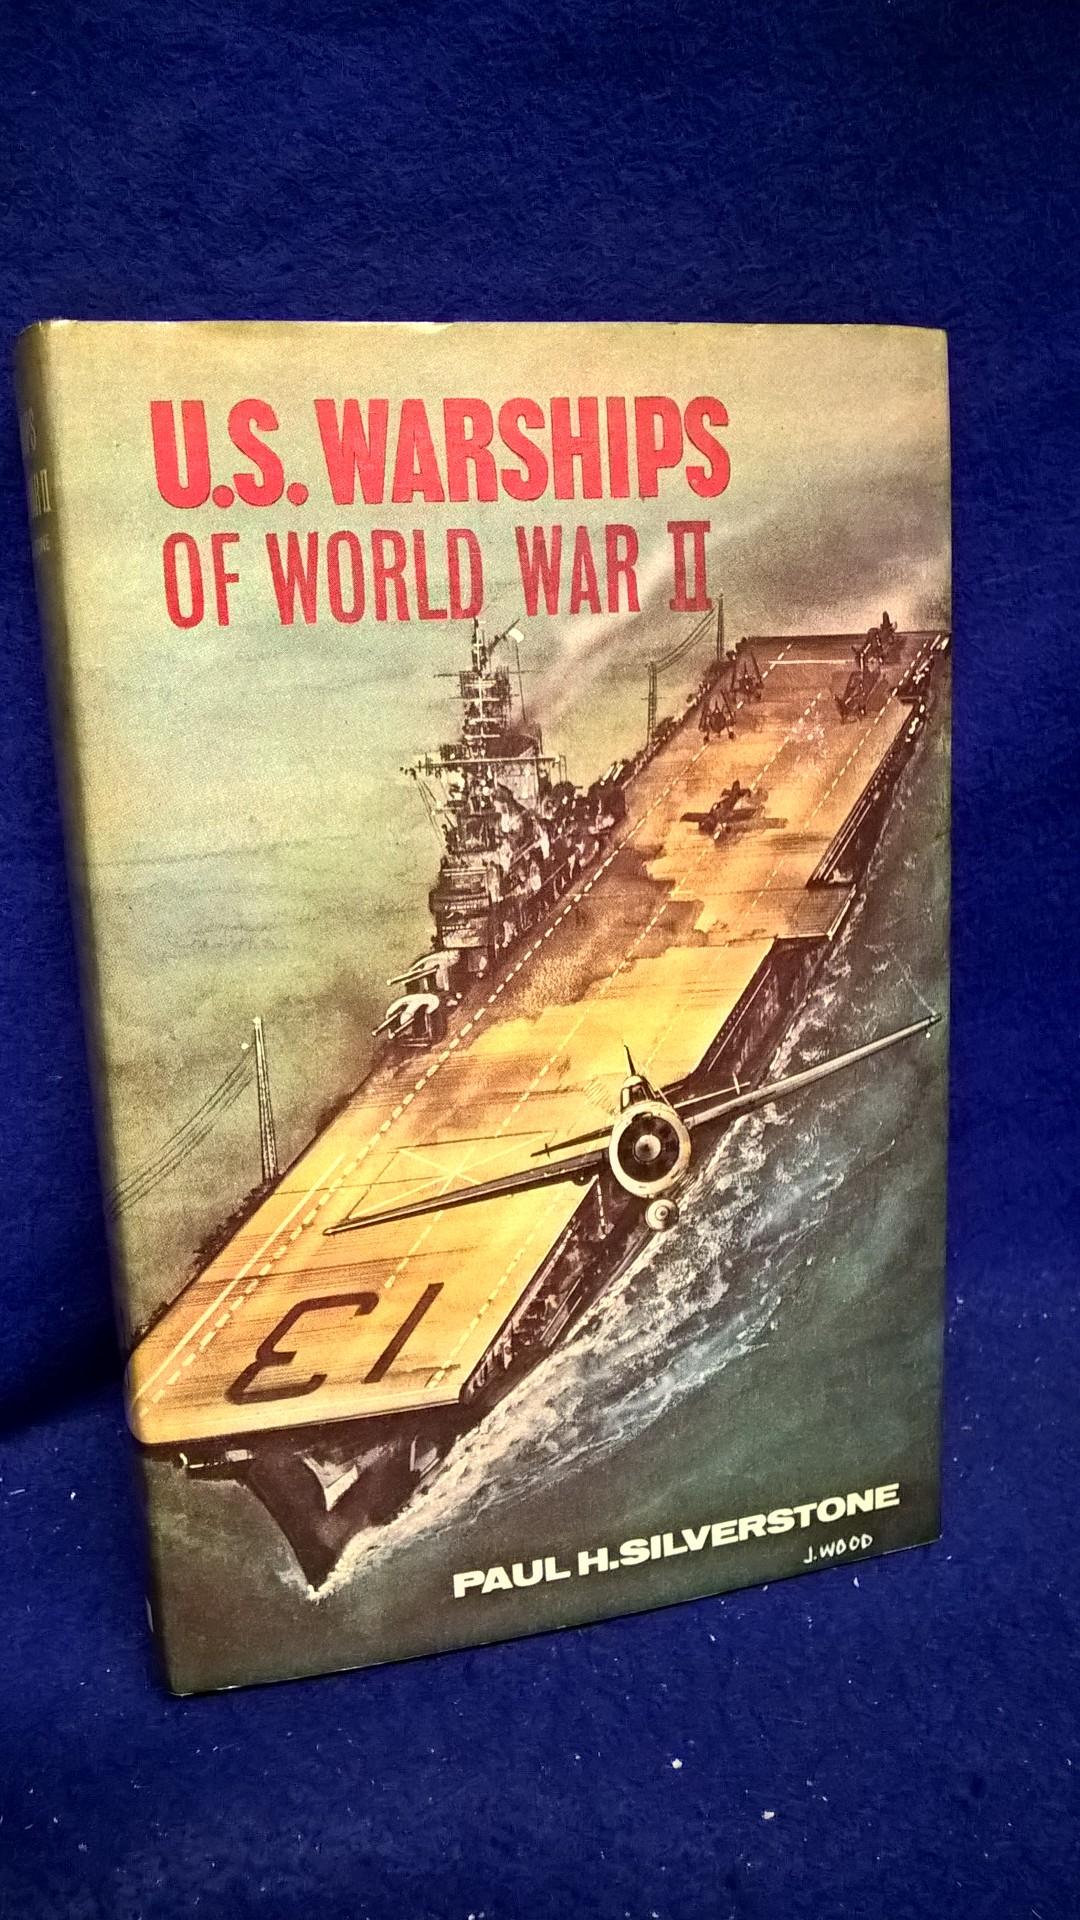 U.S. Warships of World War II.